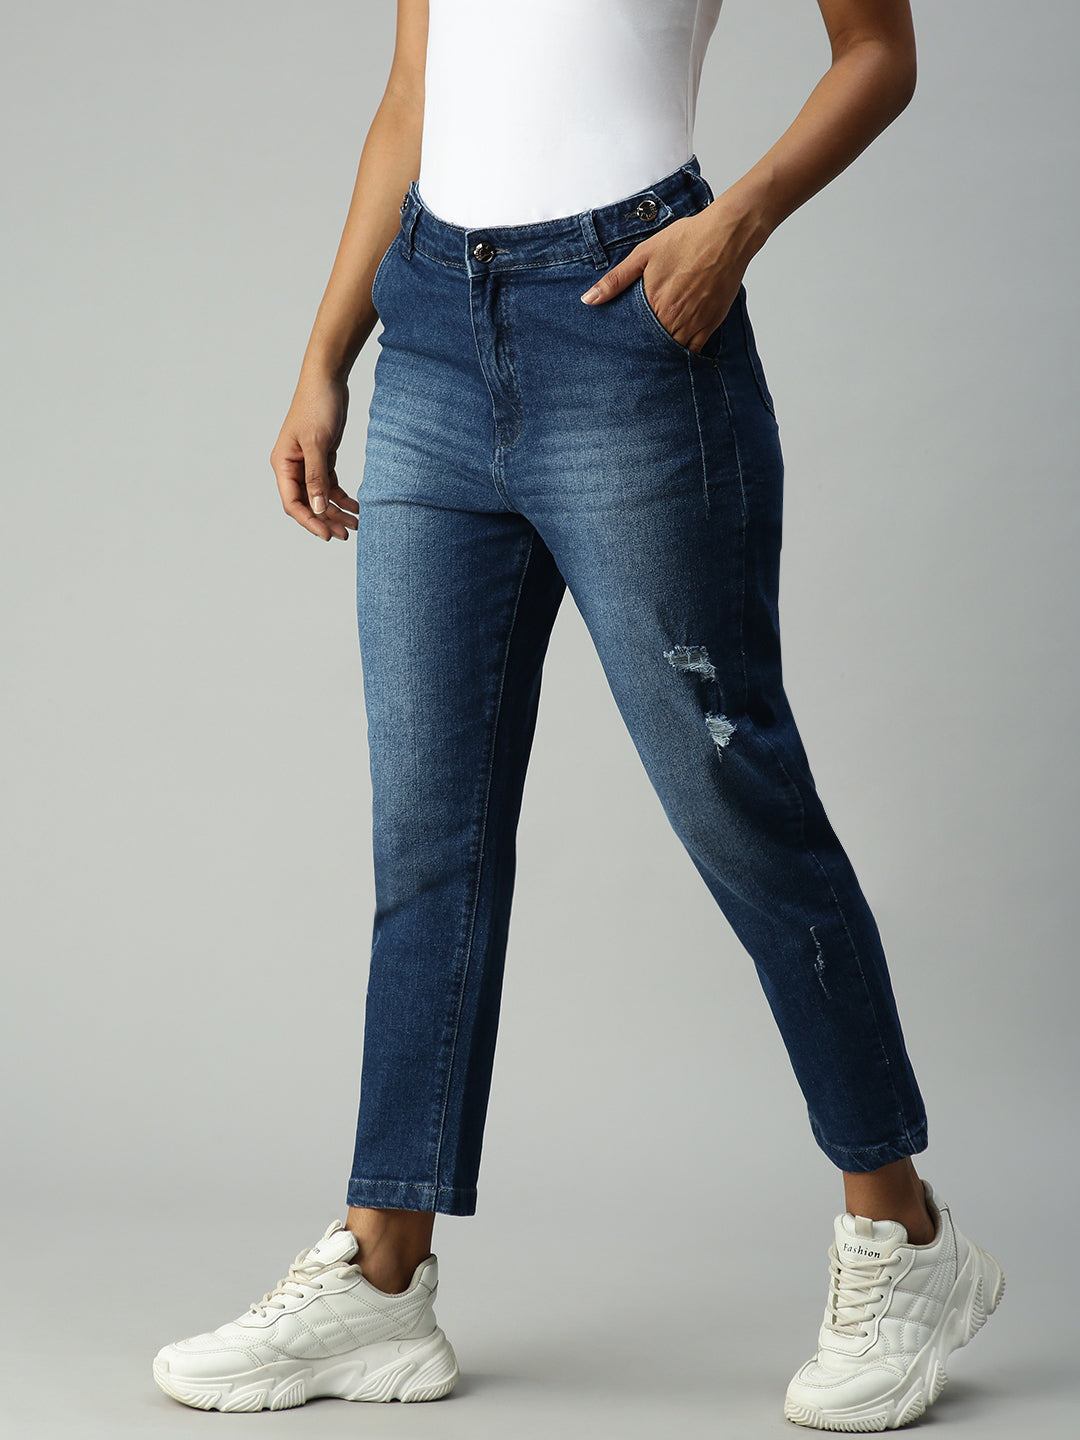 Women's Blue Solid Denim Boyfriend Fit Jeans